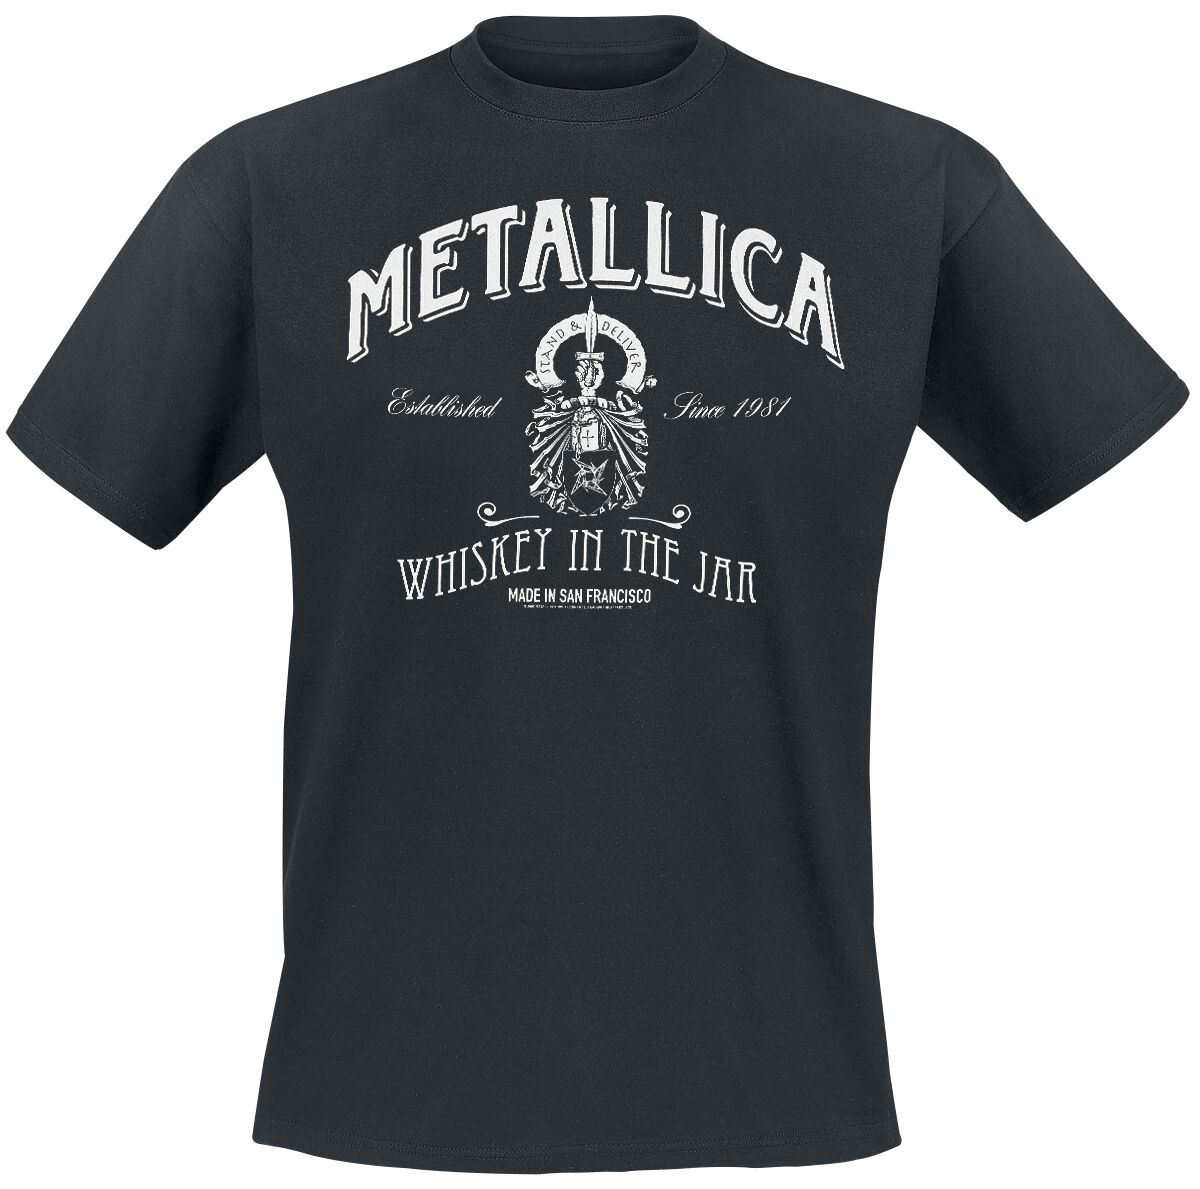 Metallica T-Shirt - Whiskey In the Jar - S bis 5XL - für Männer - Größe XL - schwarz  - Lizenziertes Merchandise!